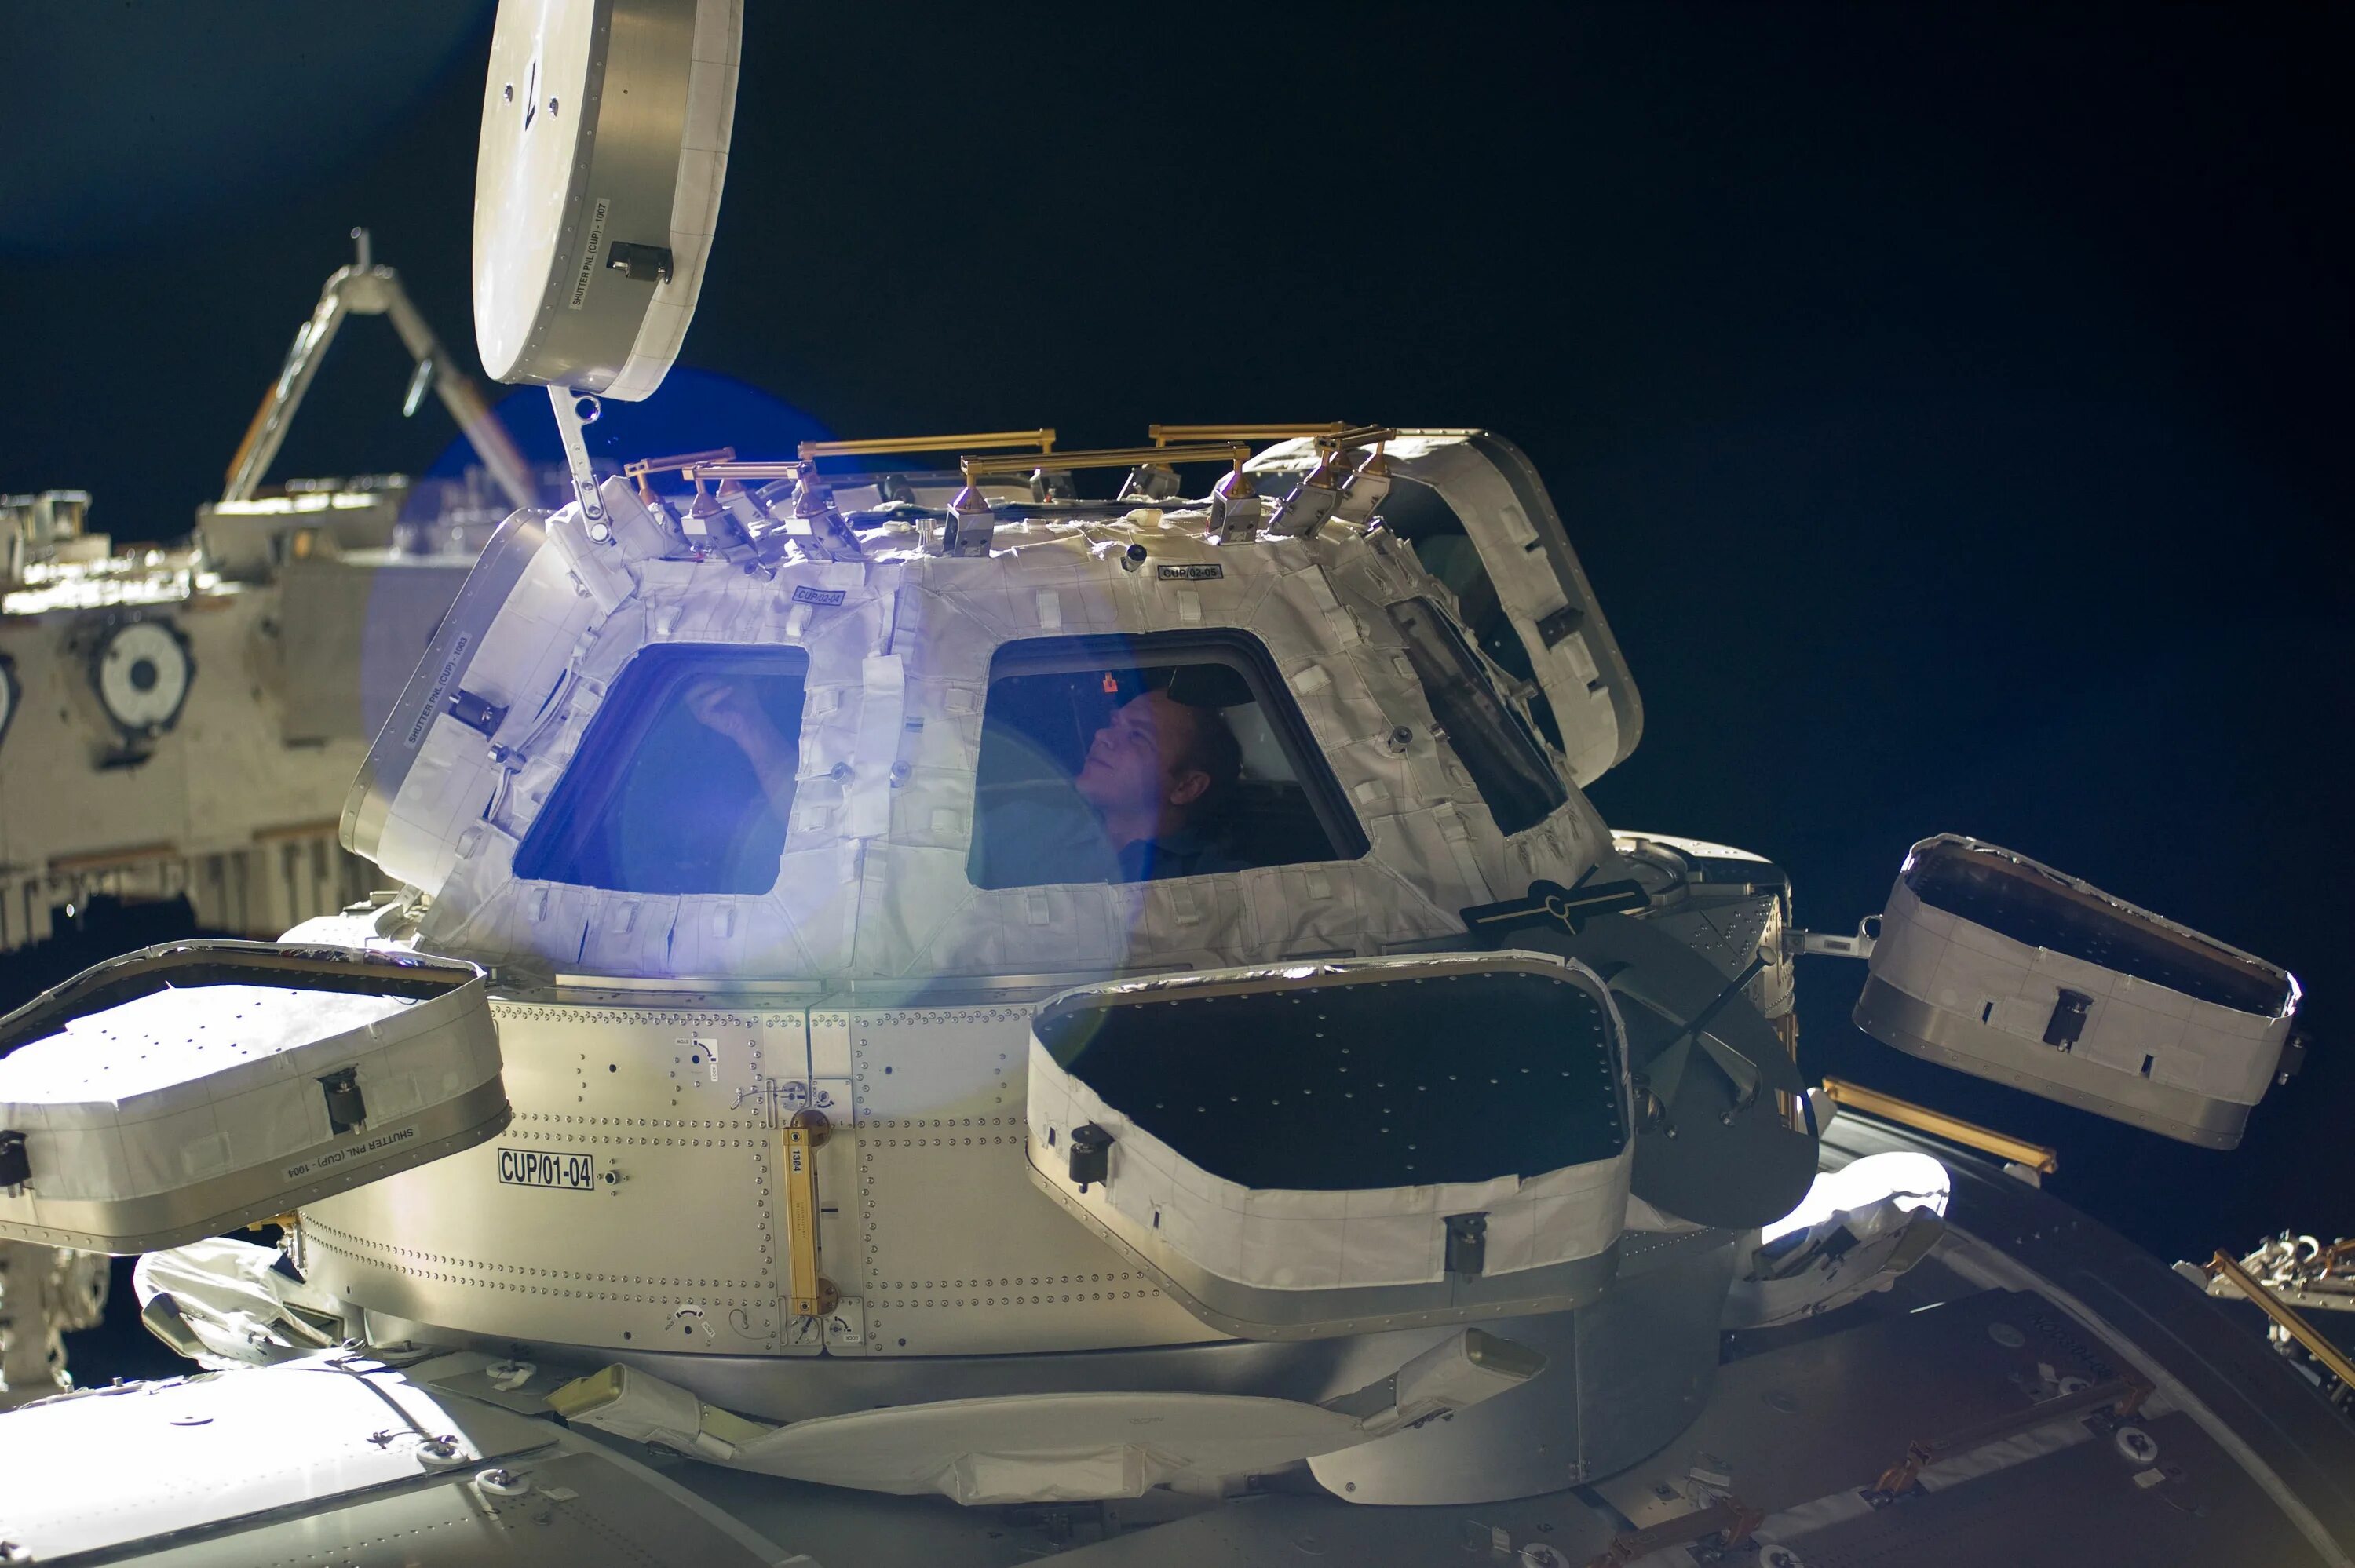 Модуль МКС «купол» (Cupola). Модель космической станции. Окно шаттла. Космический шаттл окно. Дигги космическая станция наса